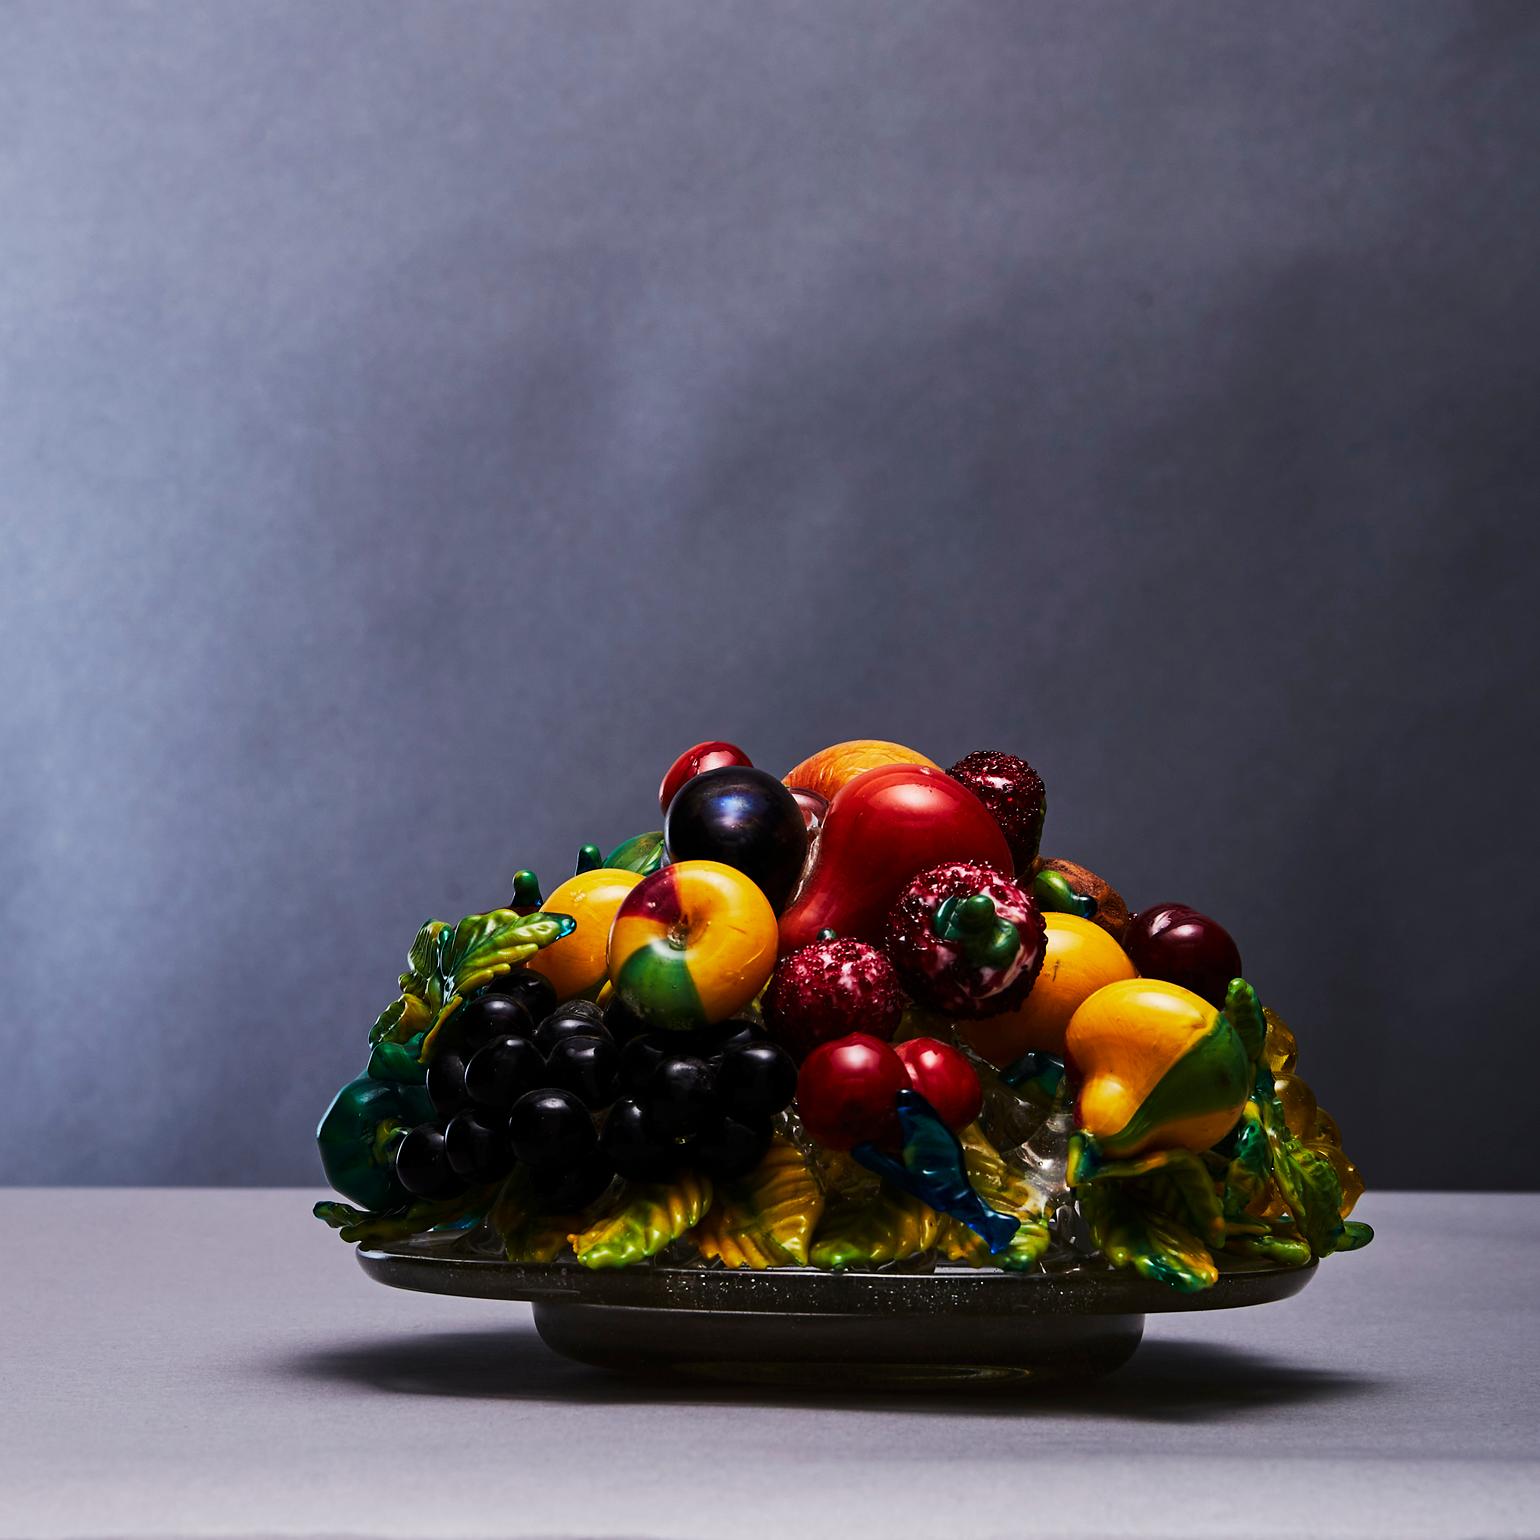 Sculpture de nature morte en verre de Murano, réalisée selon la technique du verre soufflé et appliqué.  La coupe en verre avec des fruits en polychrome aux détails complexes est réalisée par Artisti Barovier (1890-1919) vers 1919. Chaque fruit a sa